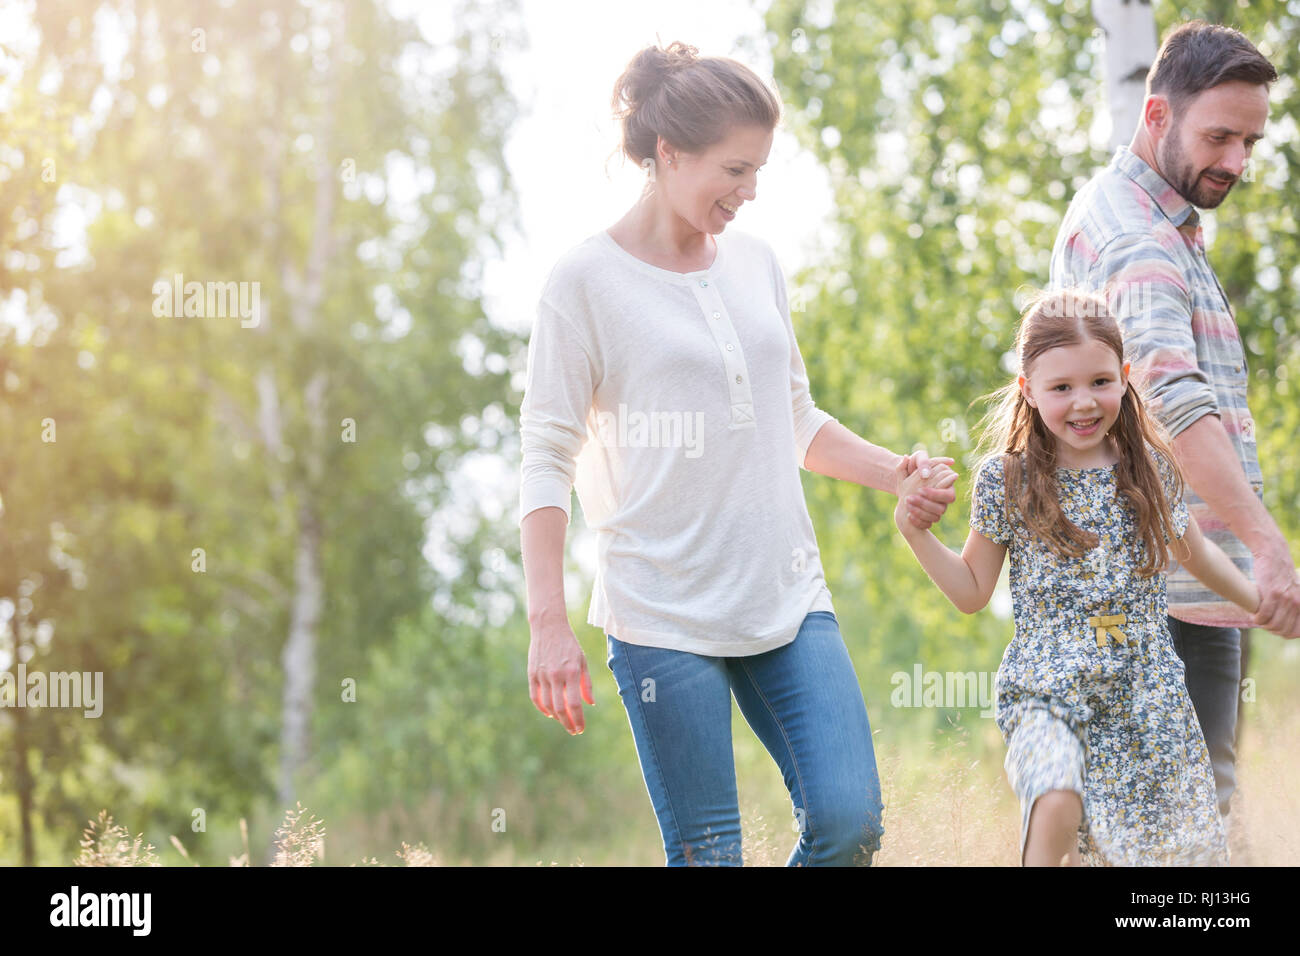 Smiling girl walking avec les parents contre des arbres sur terrain Banque D'Images